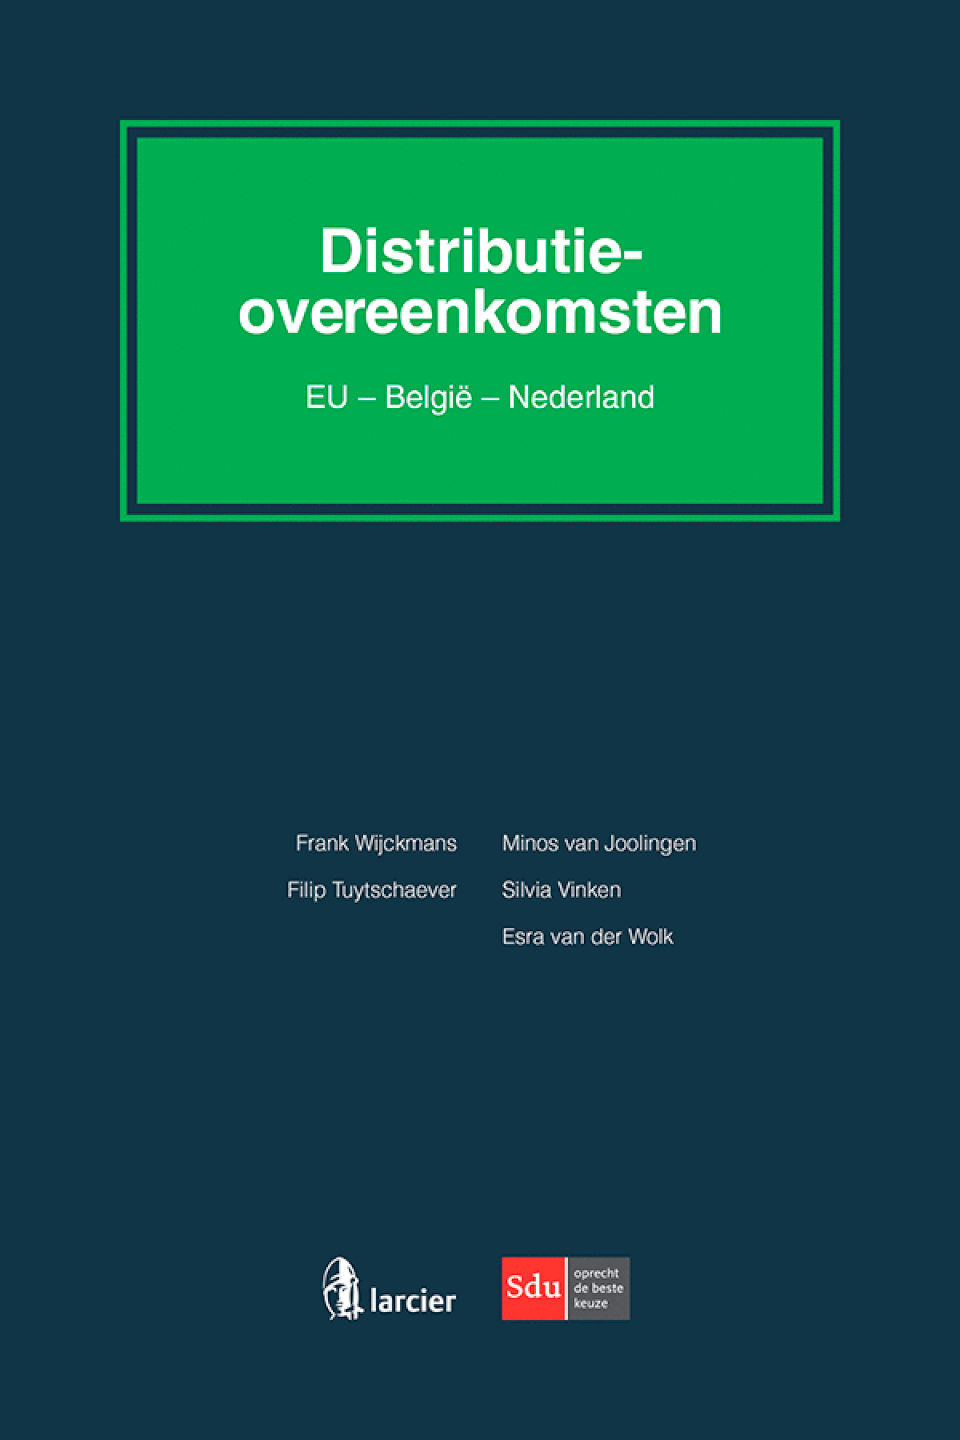 Distributieovereenkomsten (EU - België - Nederland)